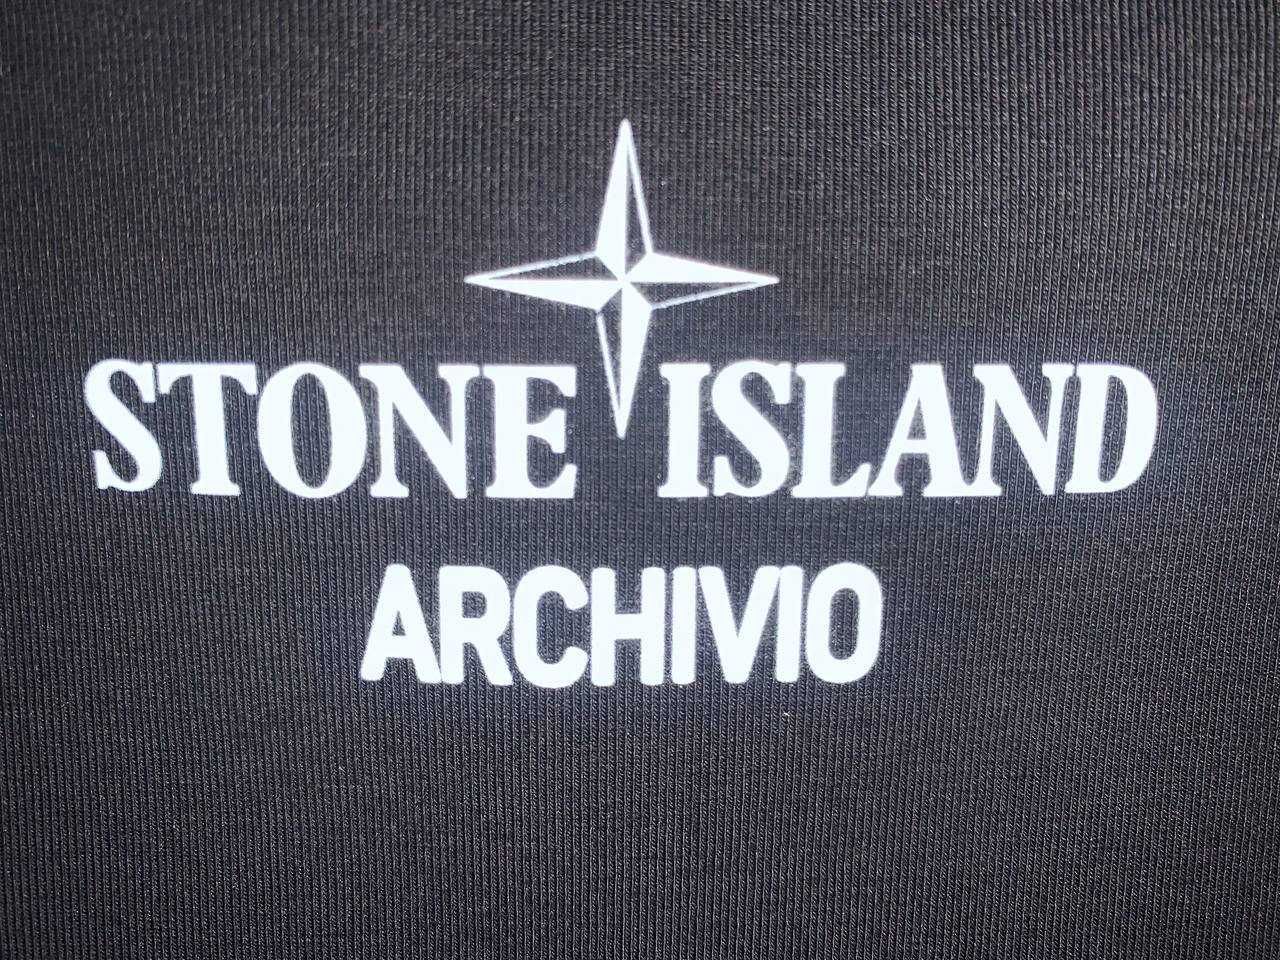 Футболка stone island archivio t shirt стон айленд